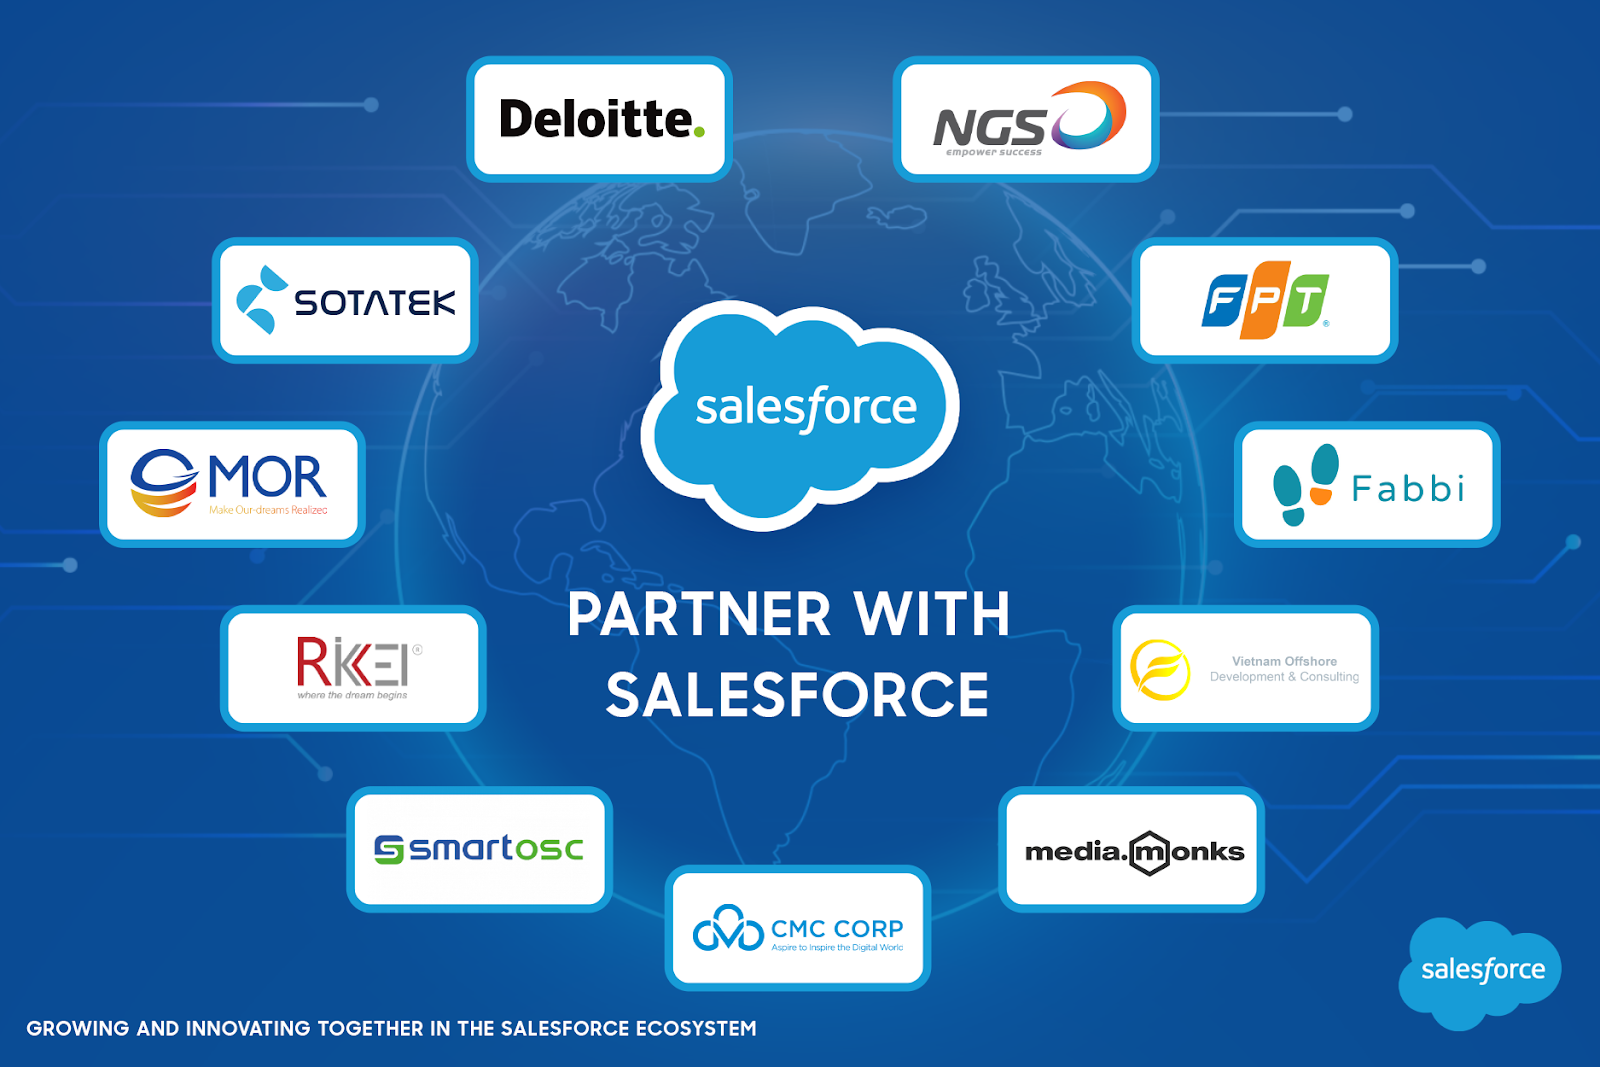 Salesforce’s partners in Vietnam